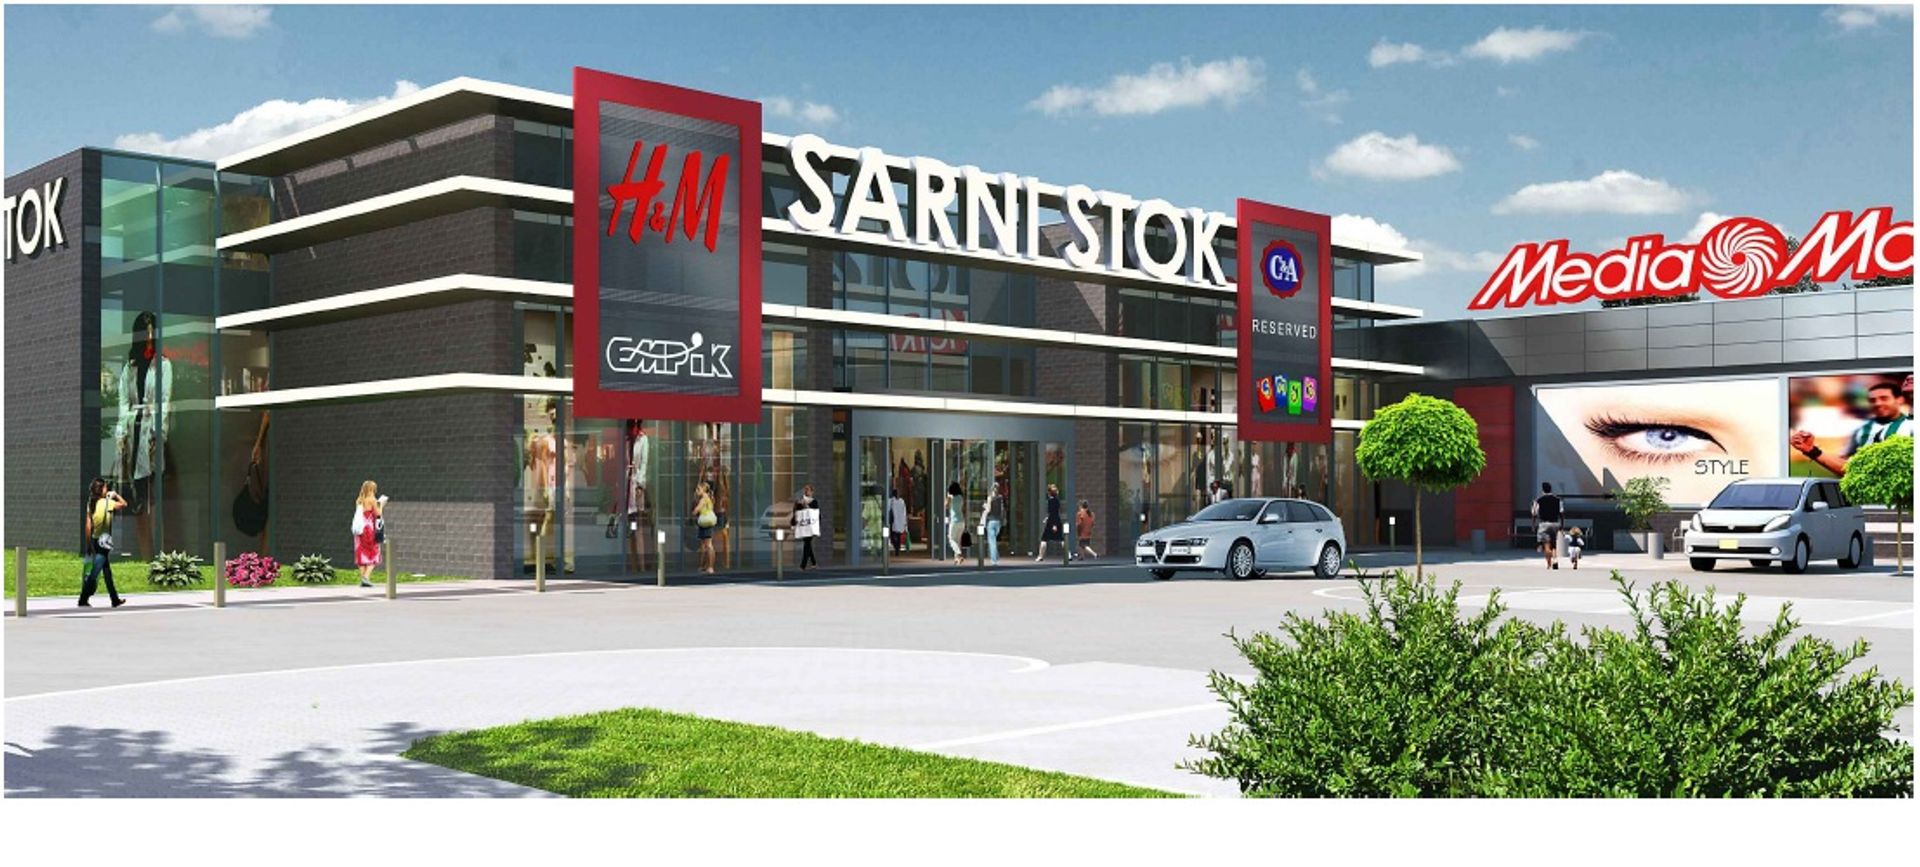  Sarni Stok z hipermarketem Carrefour w nowej odsłonie